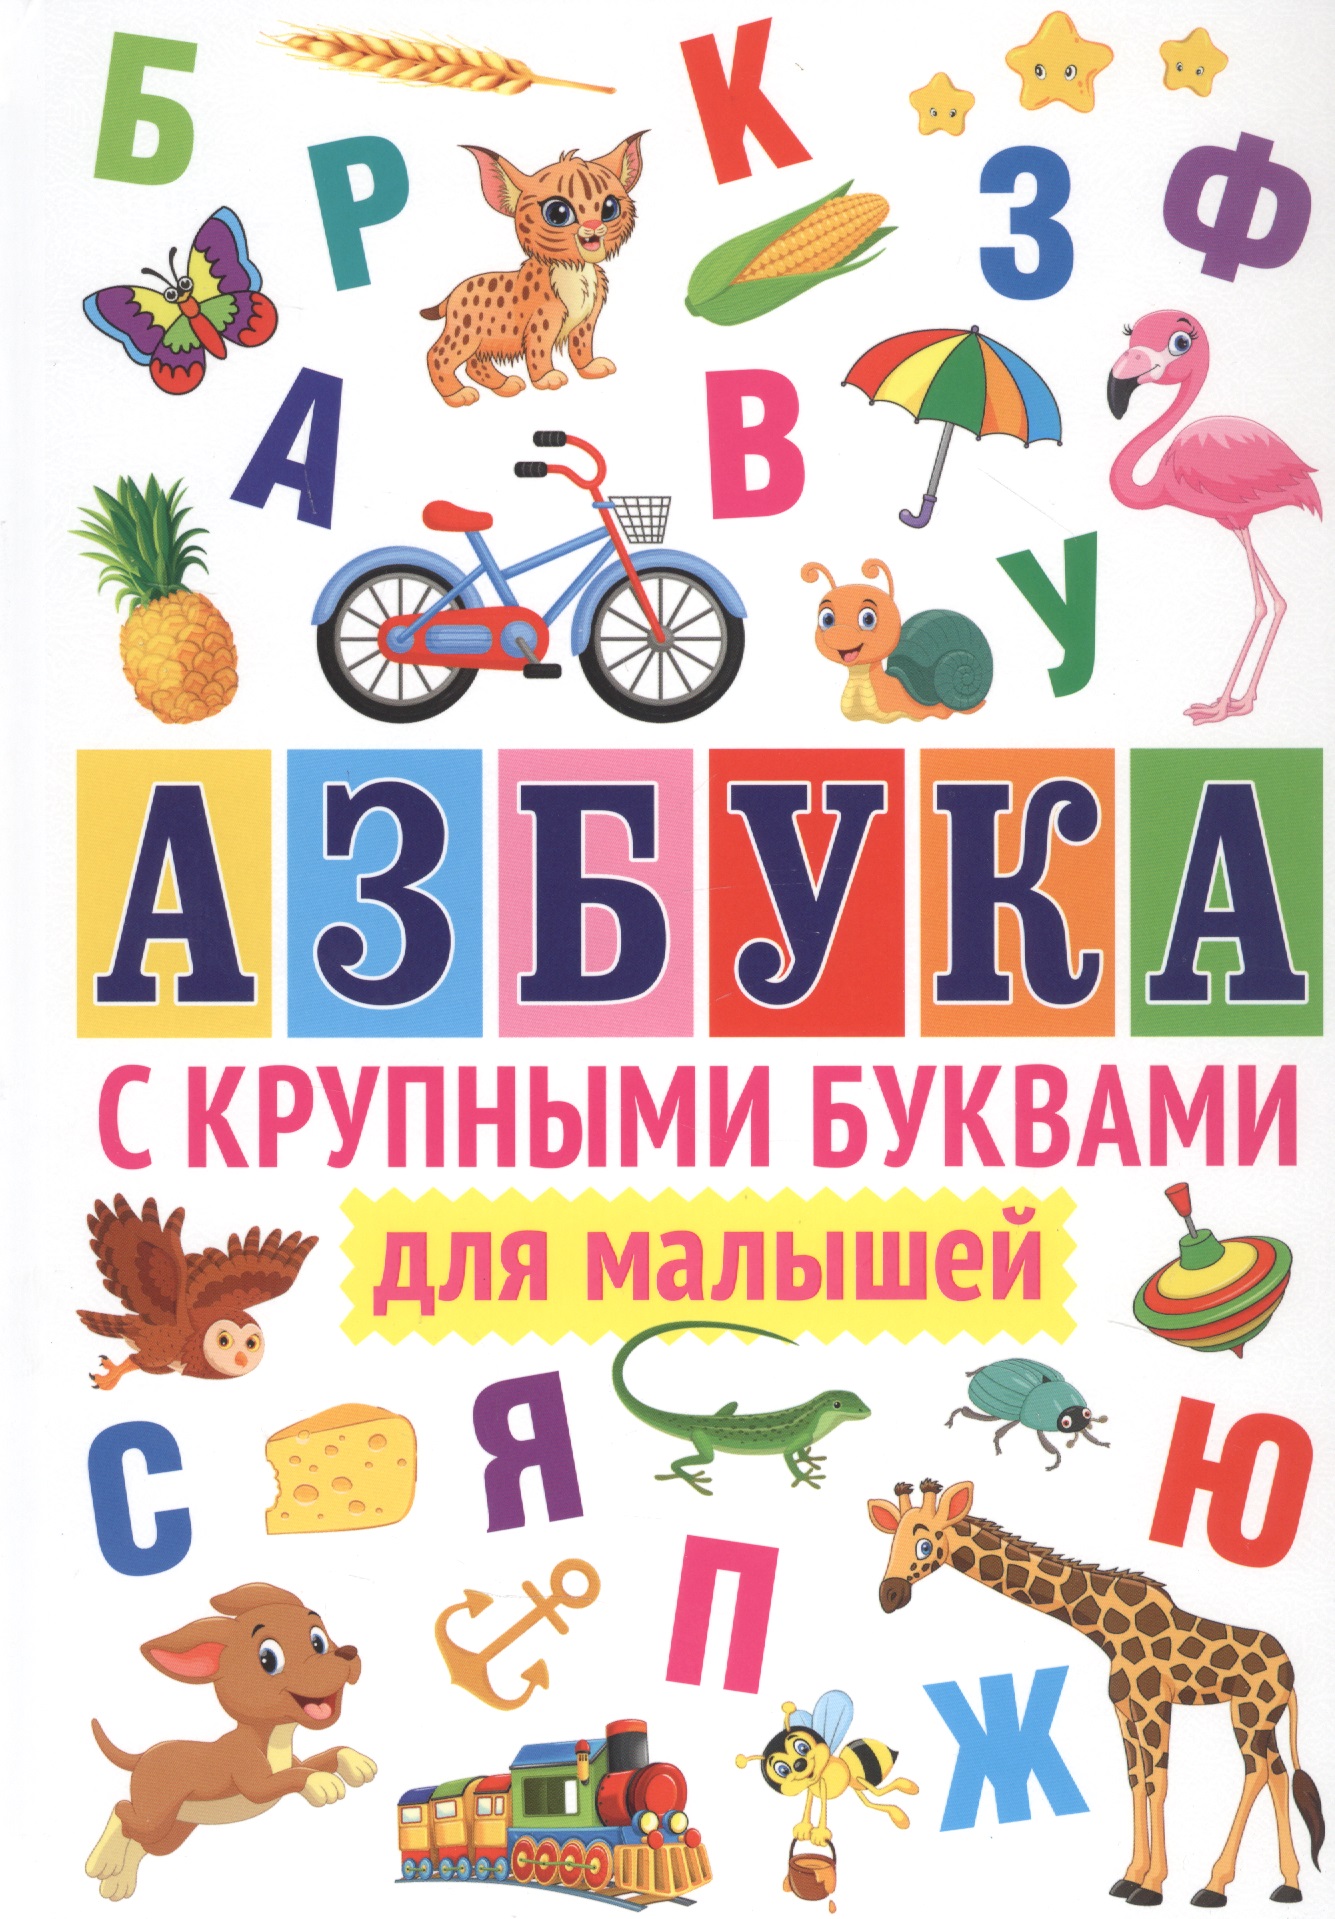 азбука с большими буквами Азбука с крупными буквами для малышей